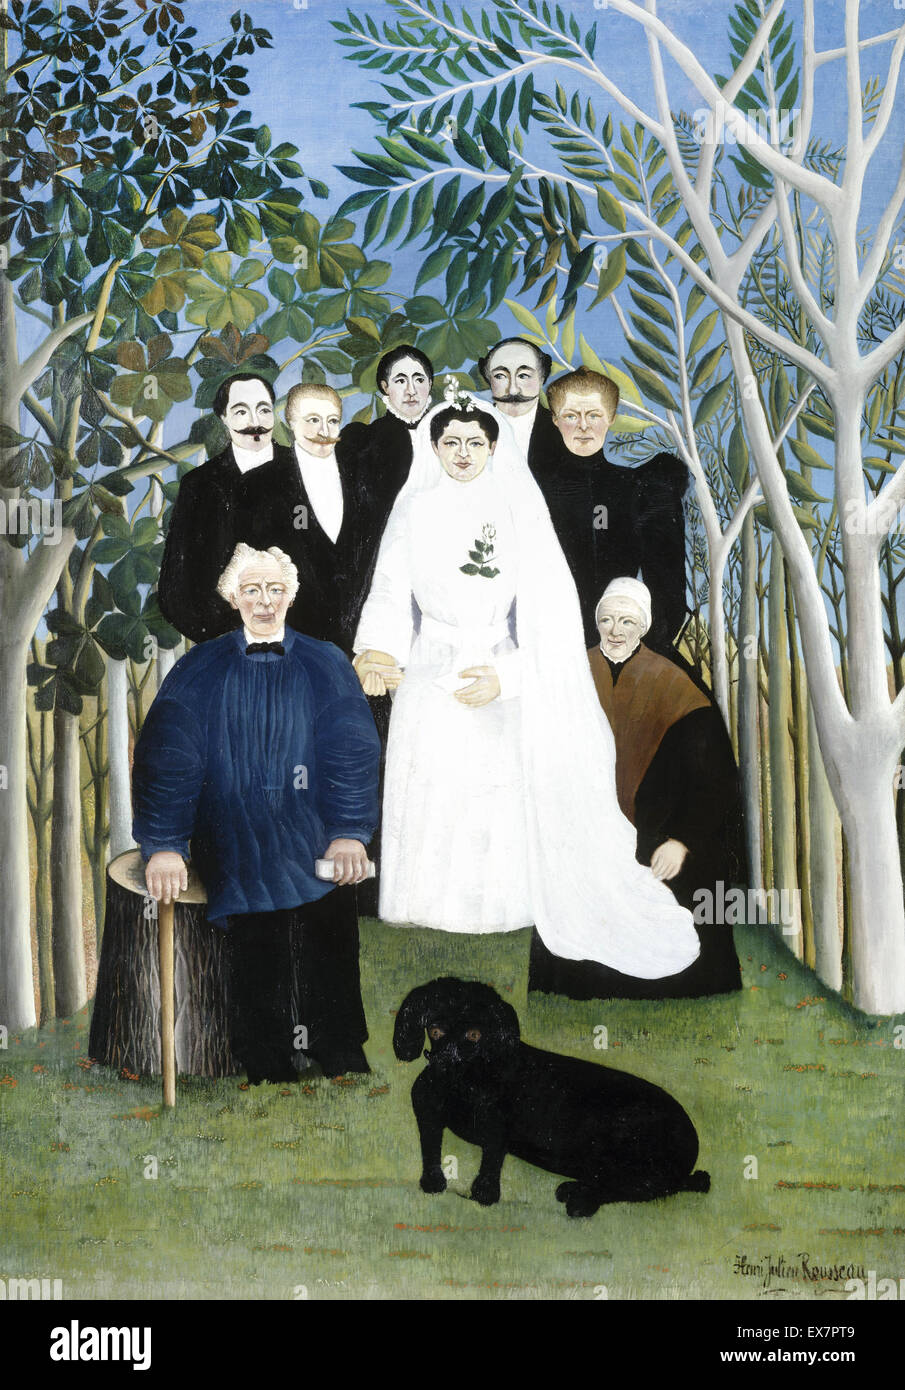 Henri Rousseau, The Wedding Party. Circa 1905. Oil on canvas. Musée de l'Orangerie, Paris, France. Stock Photo